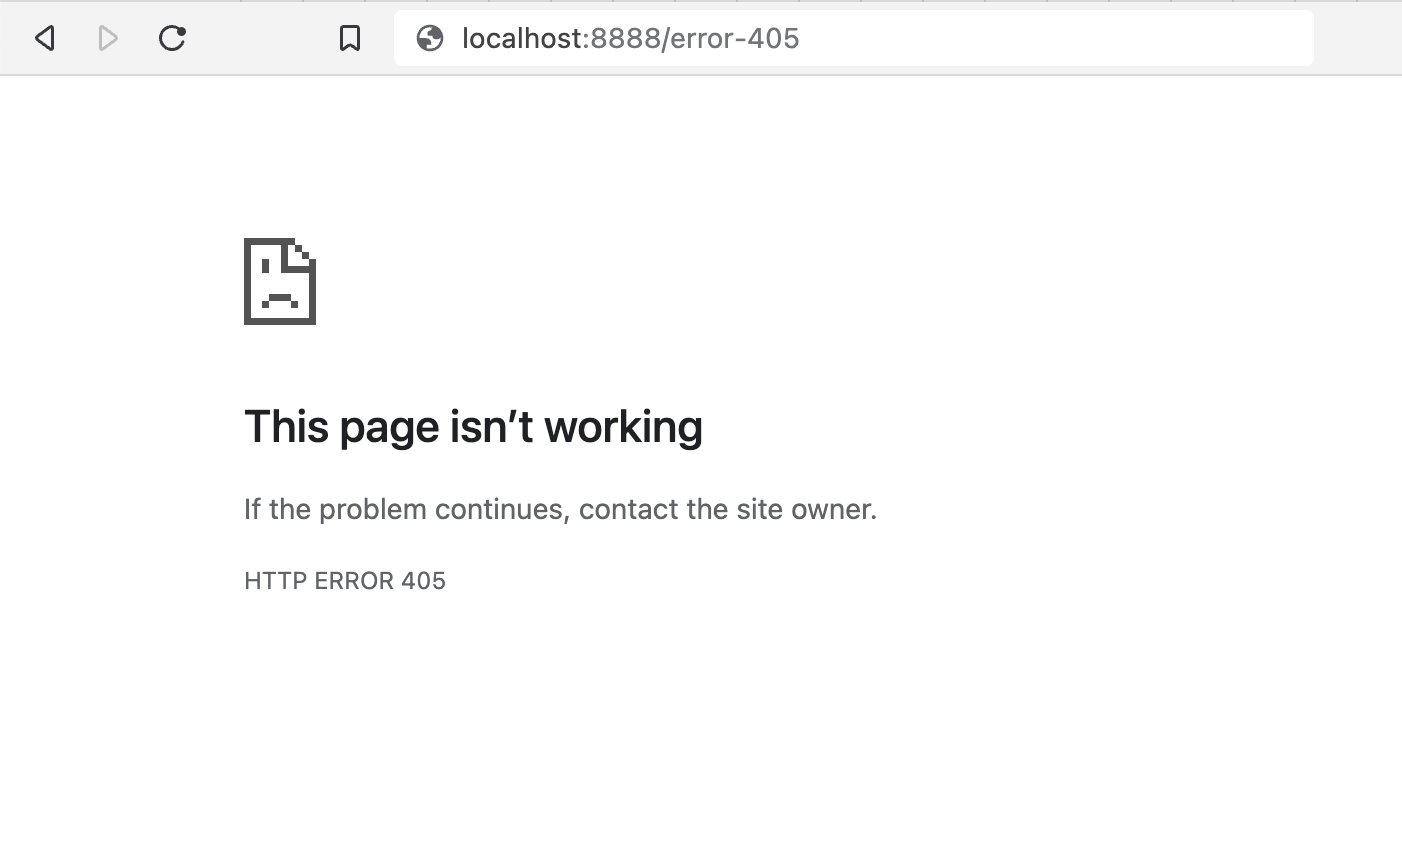 Esta página no funciona, si el problema continúa, comuníquese con el propietario del sitio. ERROR HTTP 405